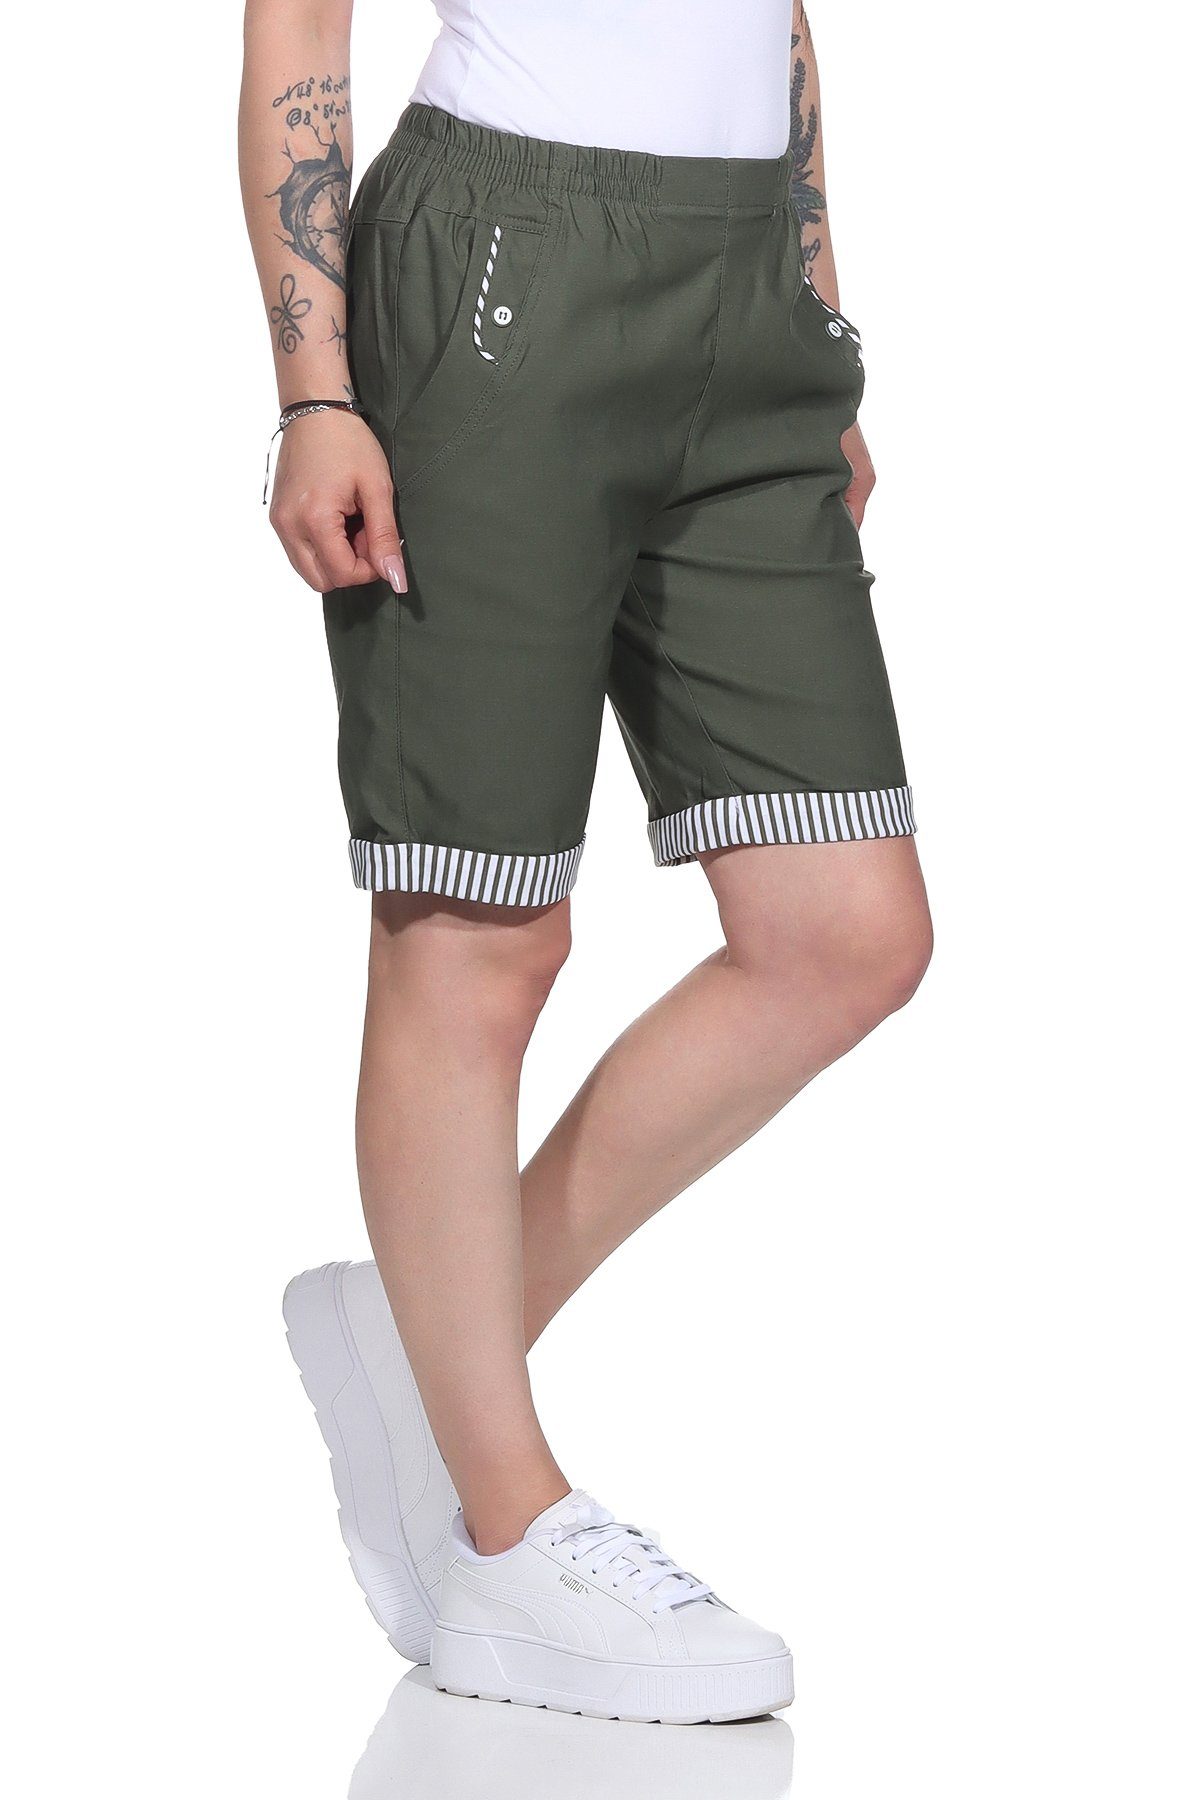 Aurela Damenmode Shorts Bermuda Maritime Damen Sommer Shorts Strandbermuda auch in großen Größen erhältlich, mit elastischem Bund, mit maritimen Details Khaki